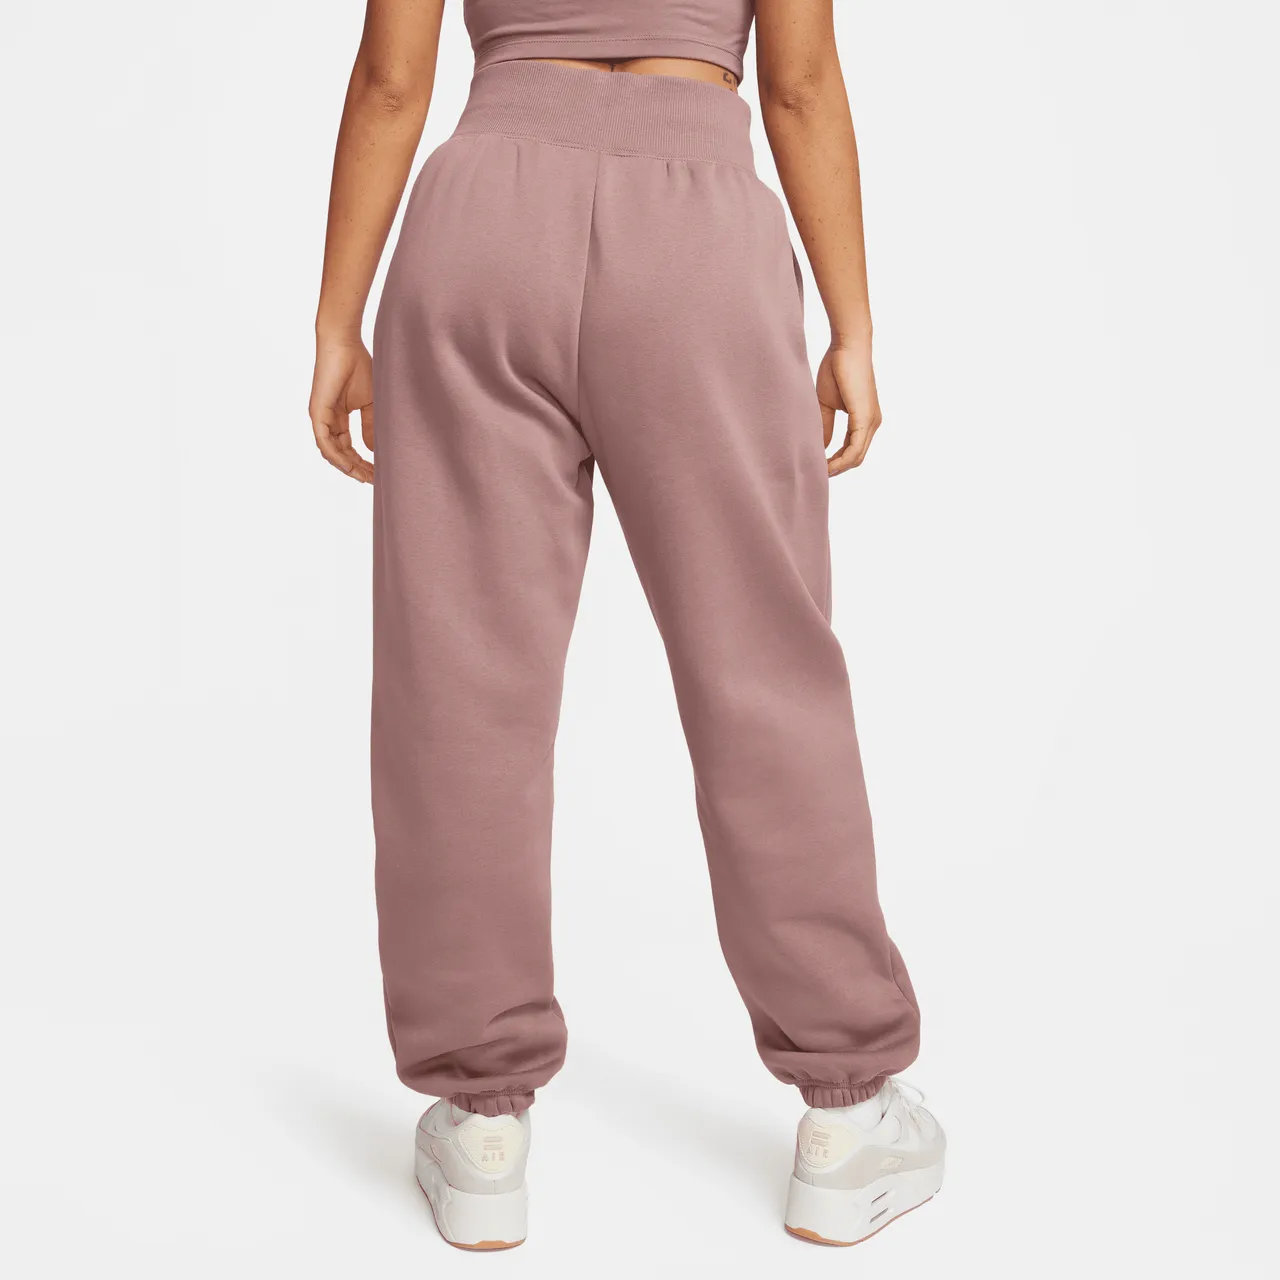 Nike Sportswear Phoenix Fleece Oversized joggingbroek met hoge taille voor dames - Paars